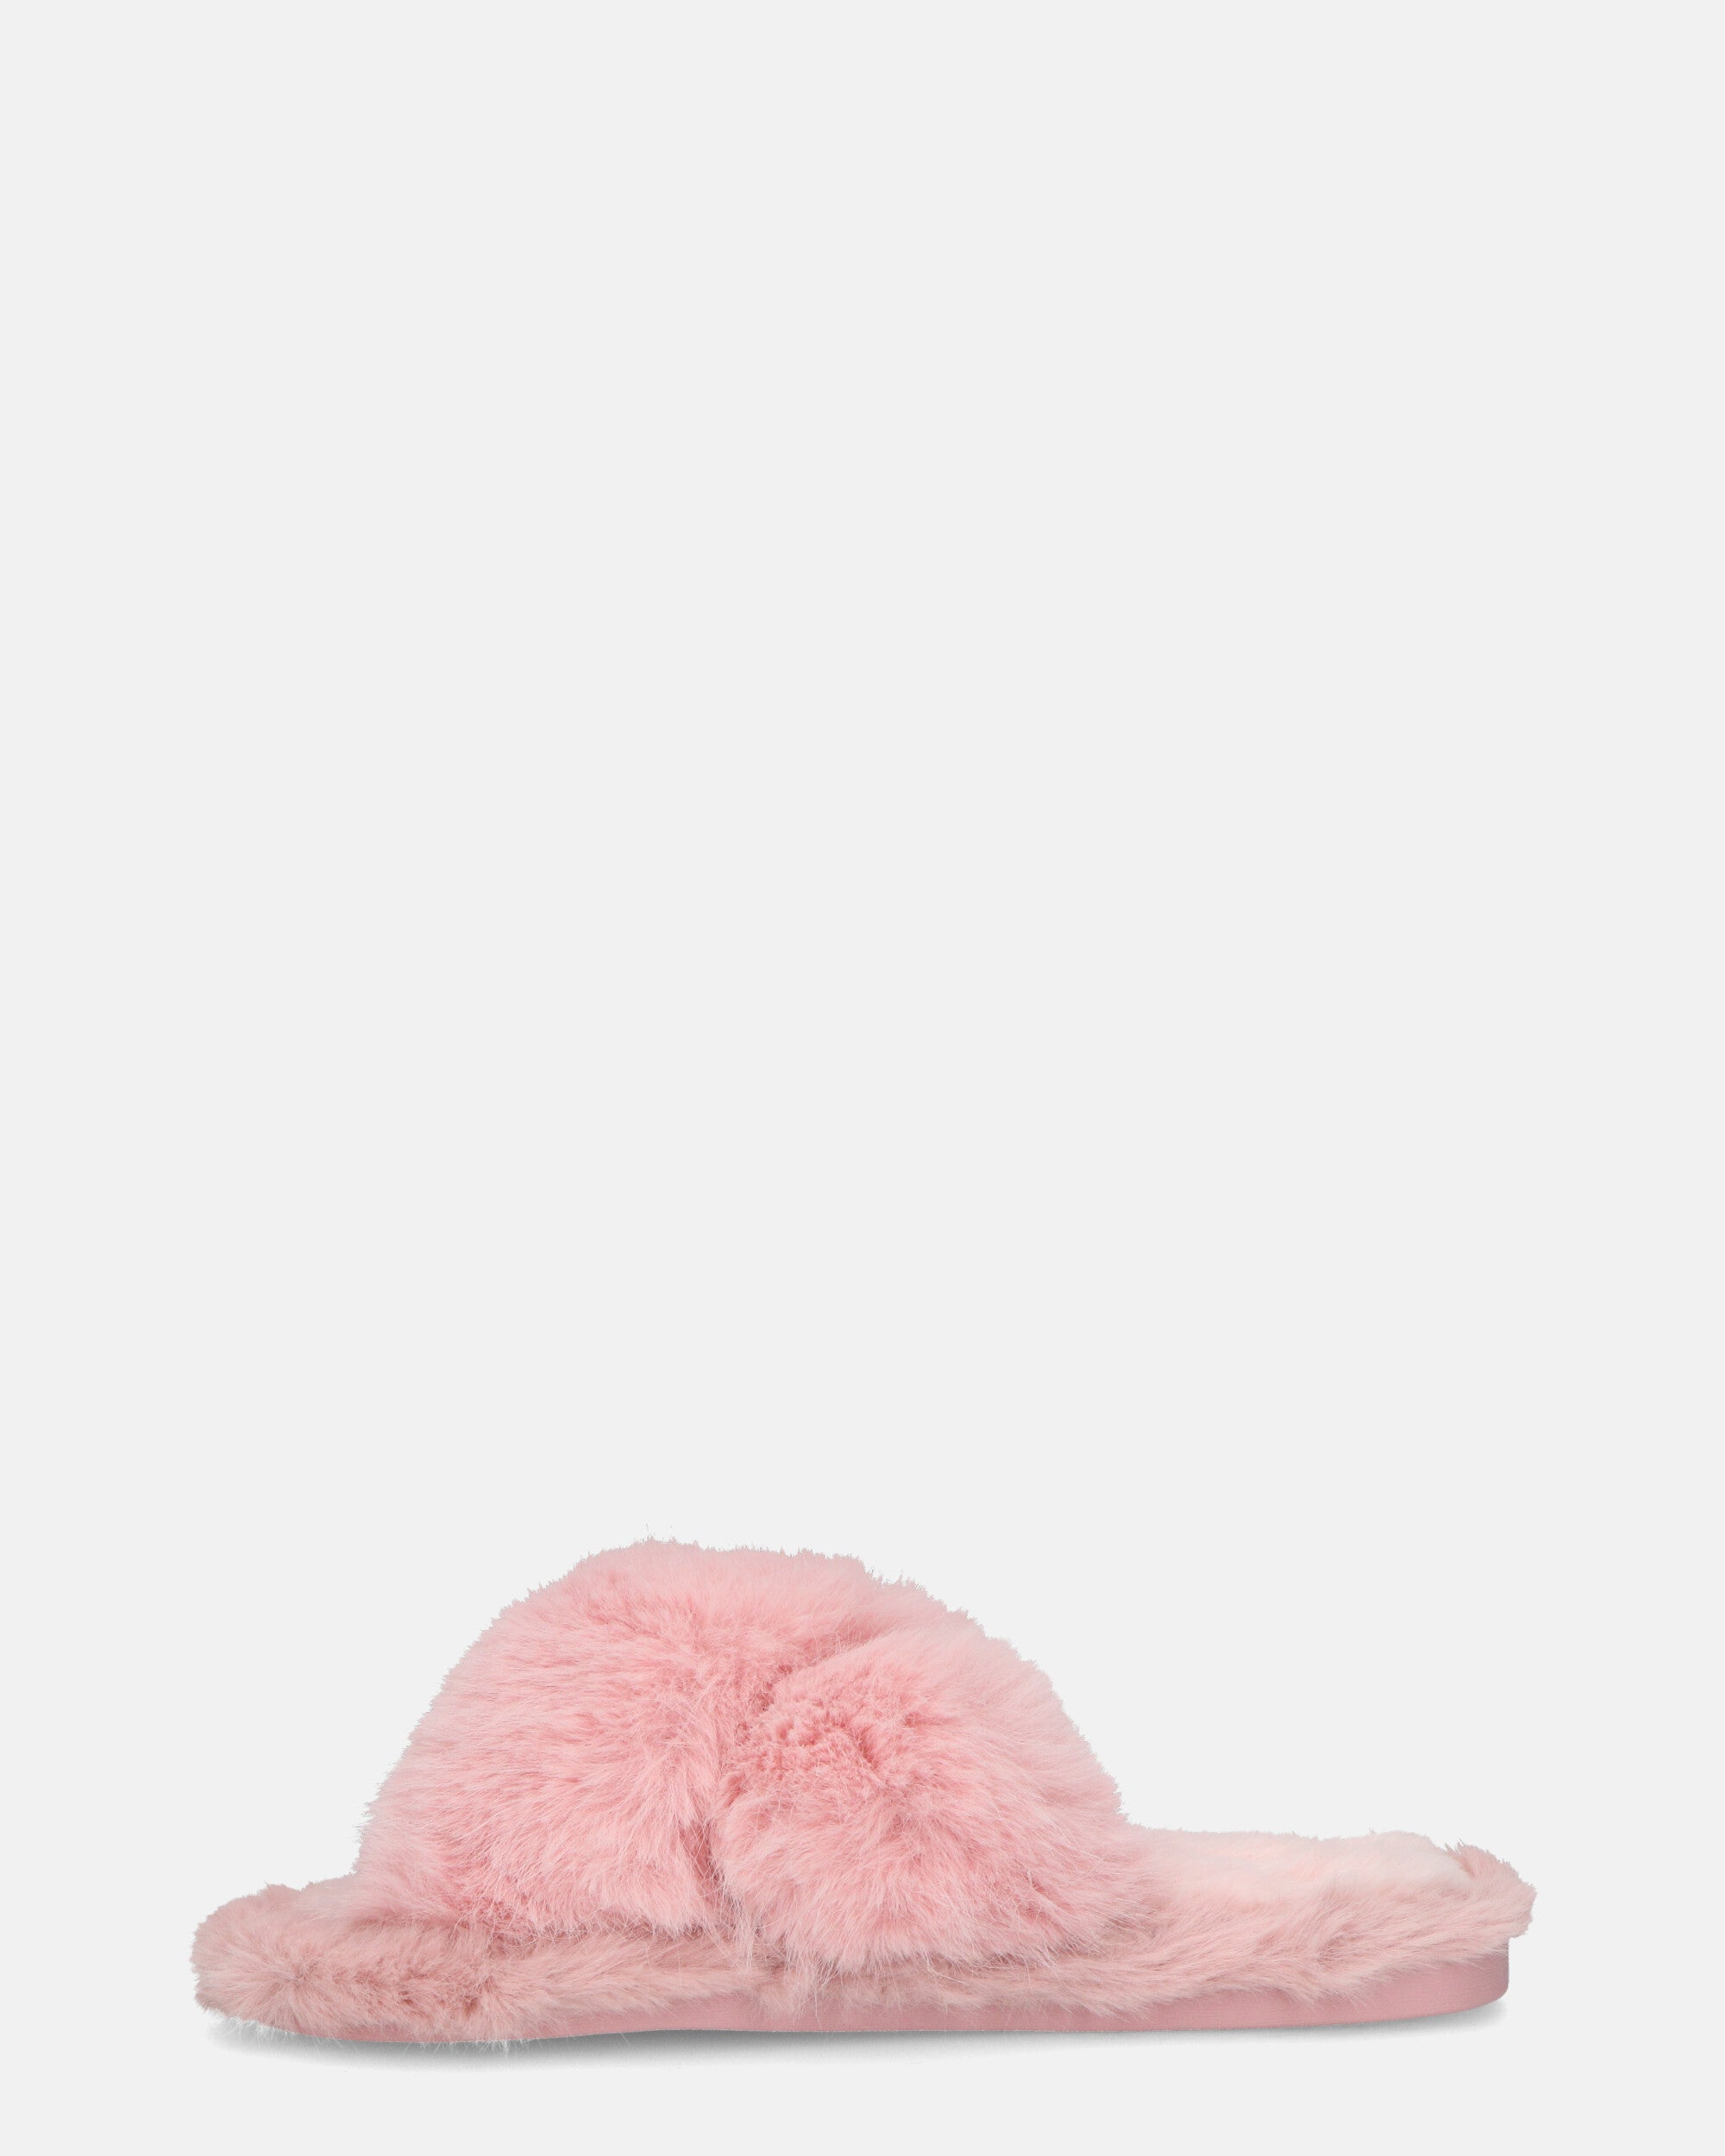 SUZUE - chaussons ouverts en fourrure rose